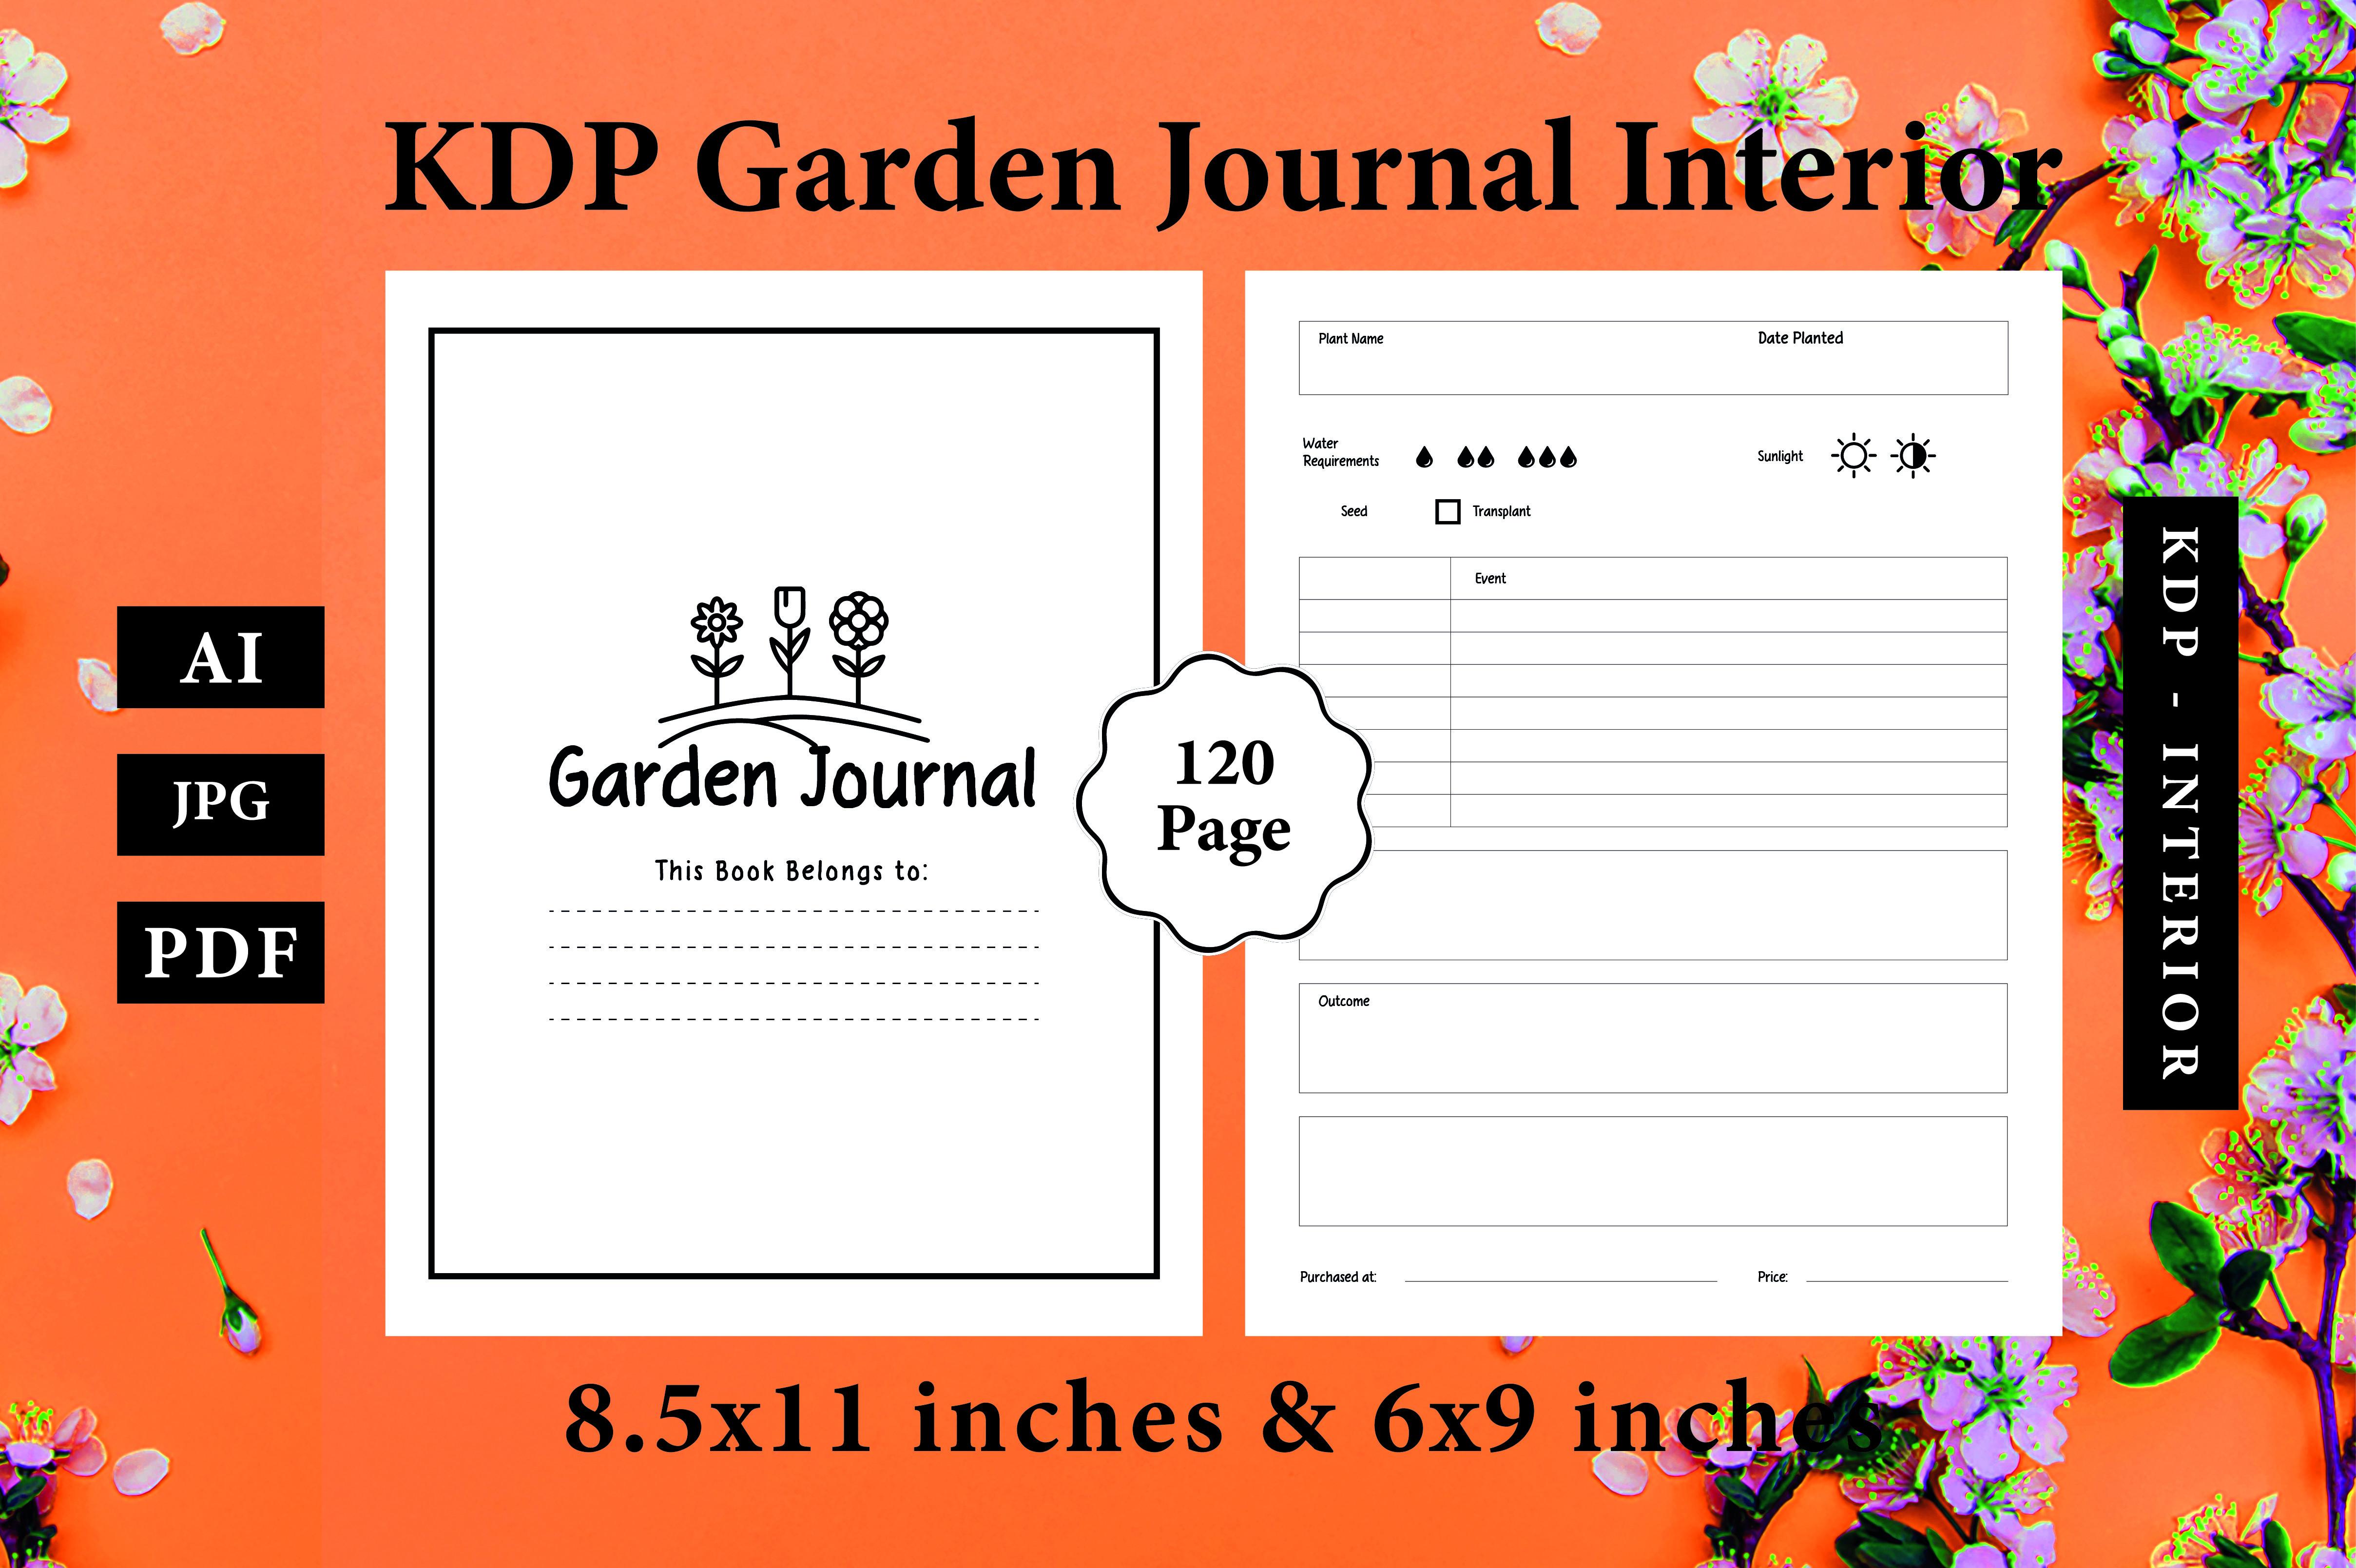 KDP Garden Journal Interior